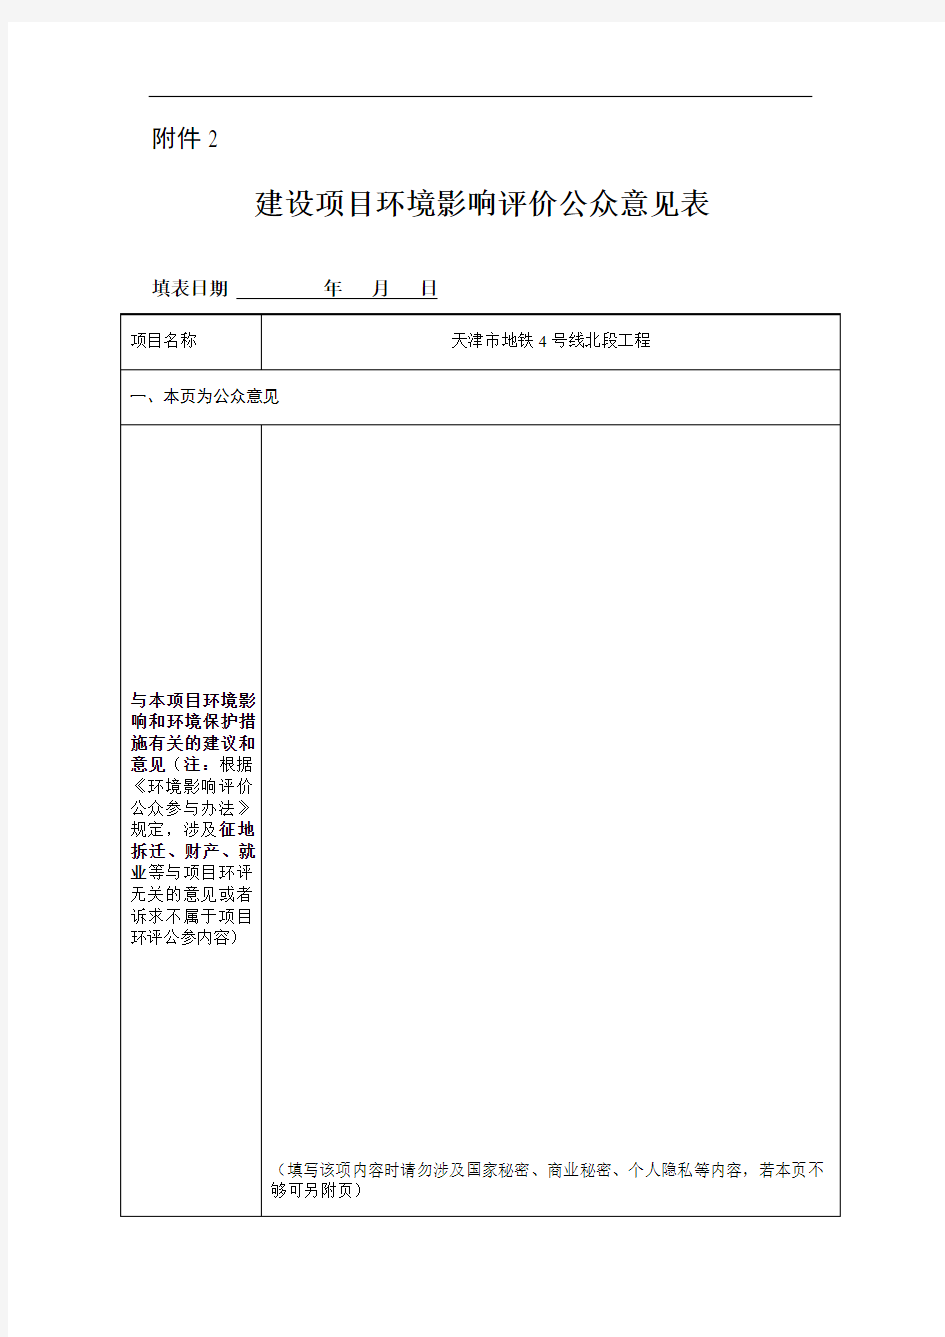 天津地铁4号线北段工程环境影响报告书 四号线北环评2